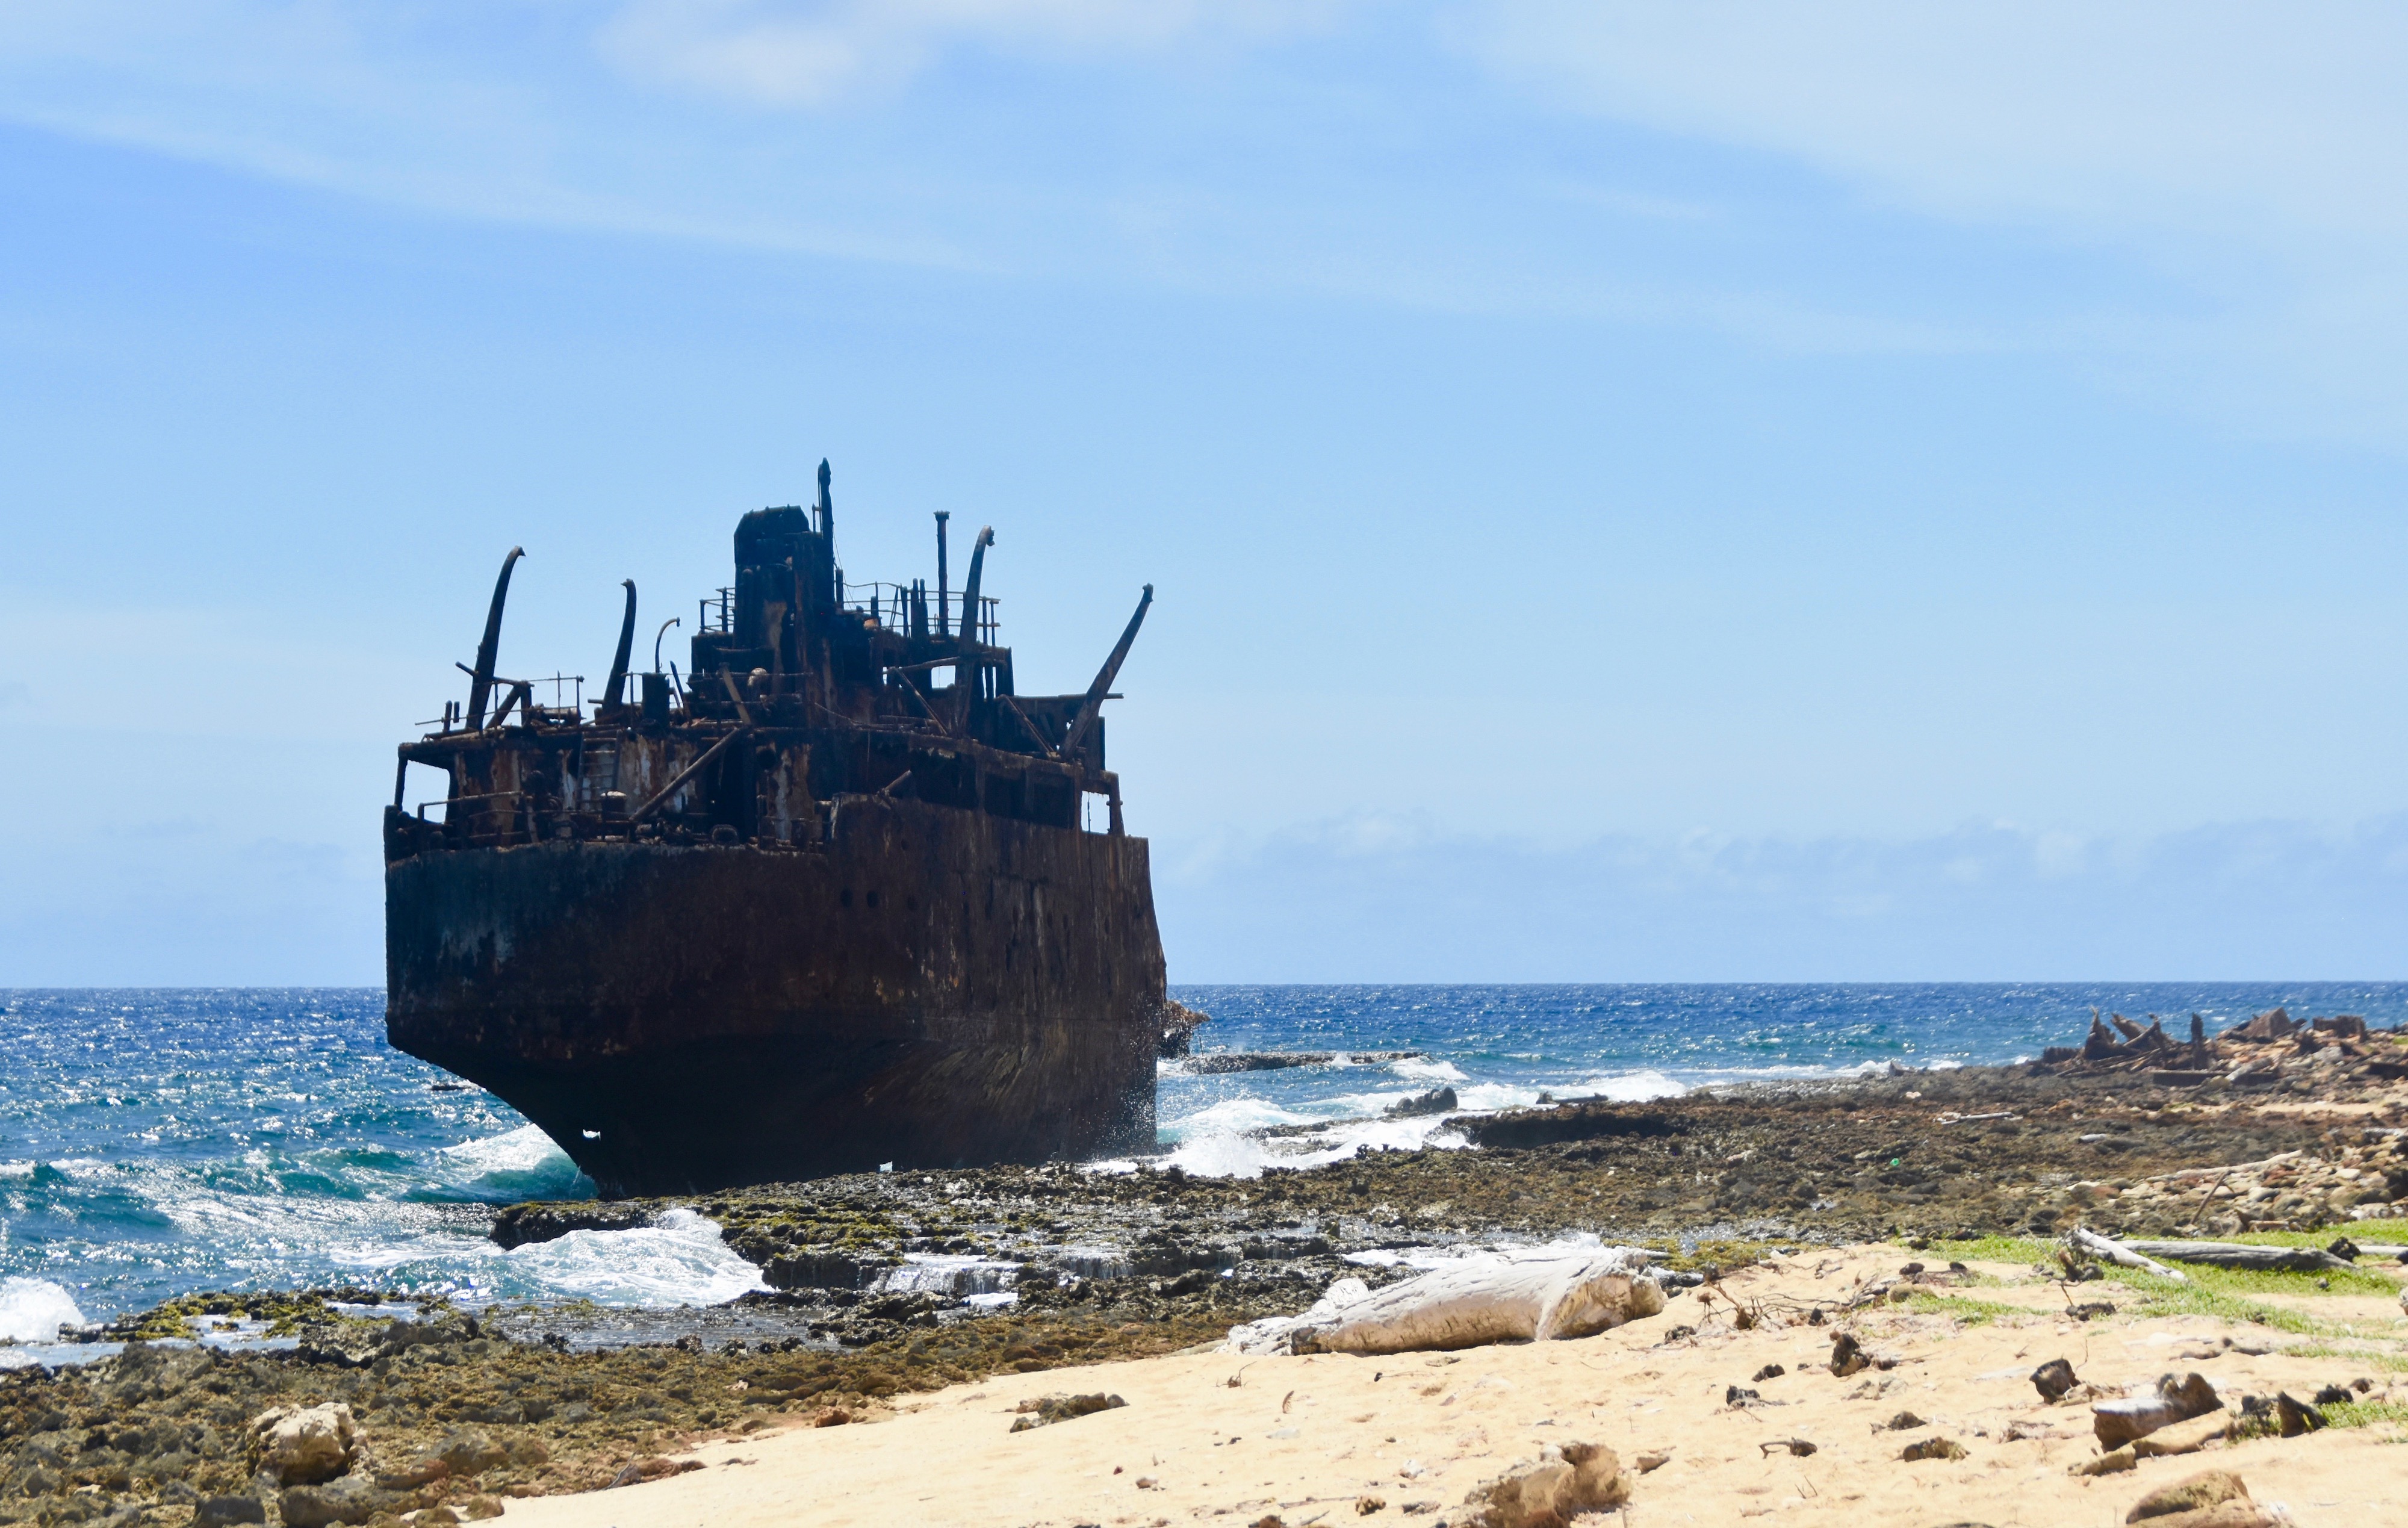 Klein Curacao Shipwreck